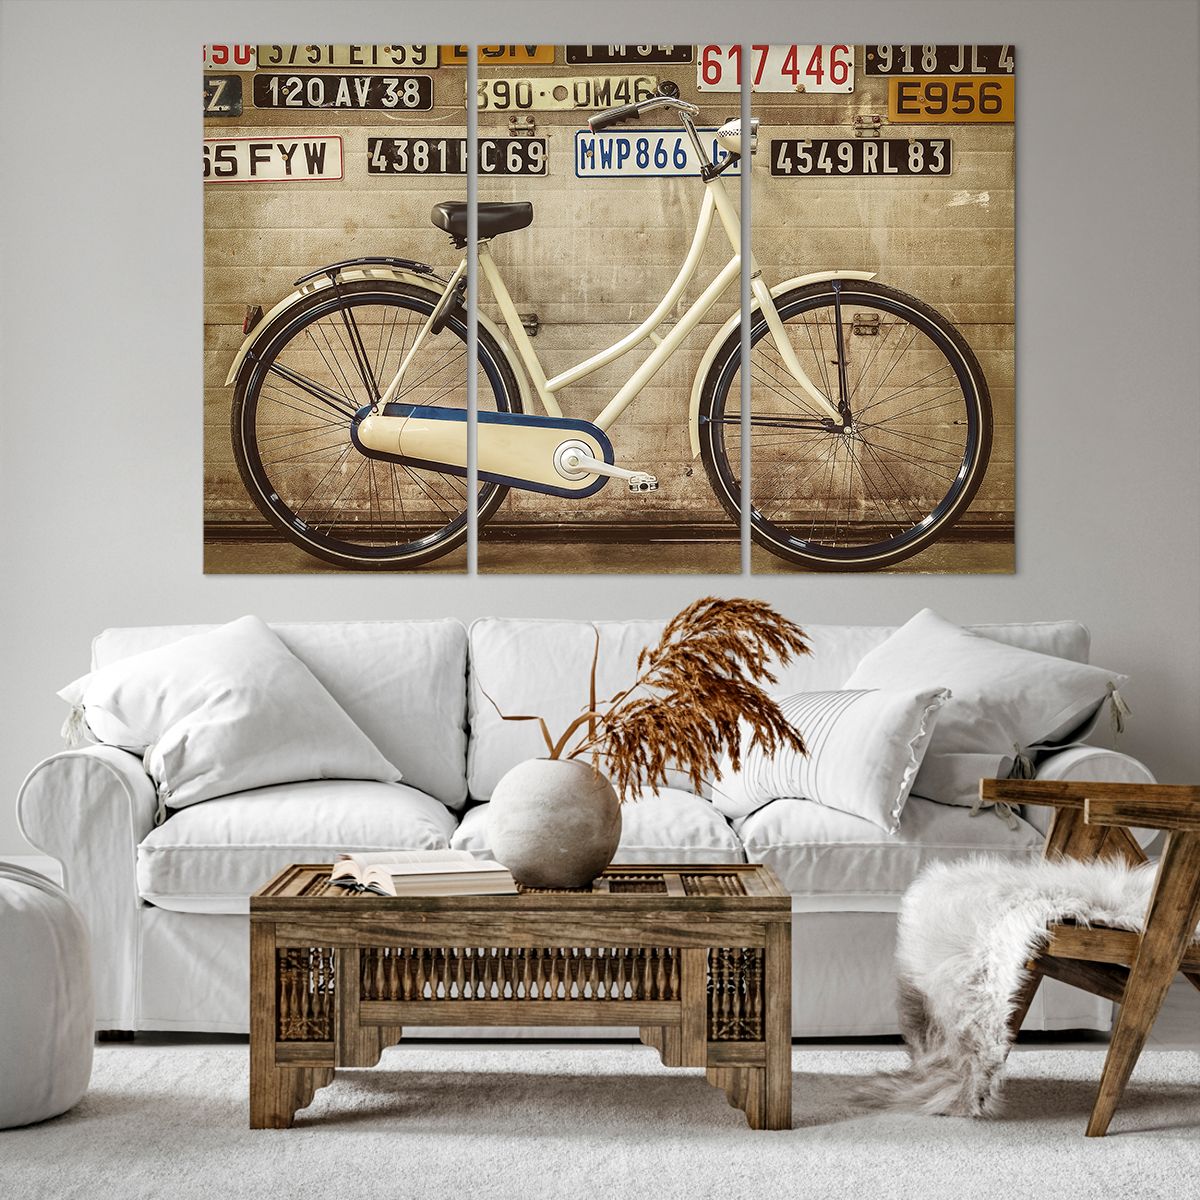 Bild auf Leinwand Wandgemälde, Bild auf Leinwand Fahrrad, Bild auf Leinwand Platten, Bild auf Leinwand Jahrgang, Bild auf Leinwand Kunst